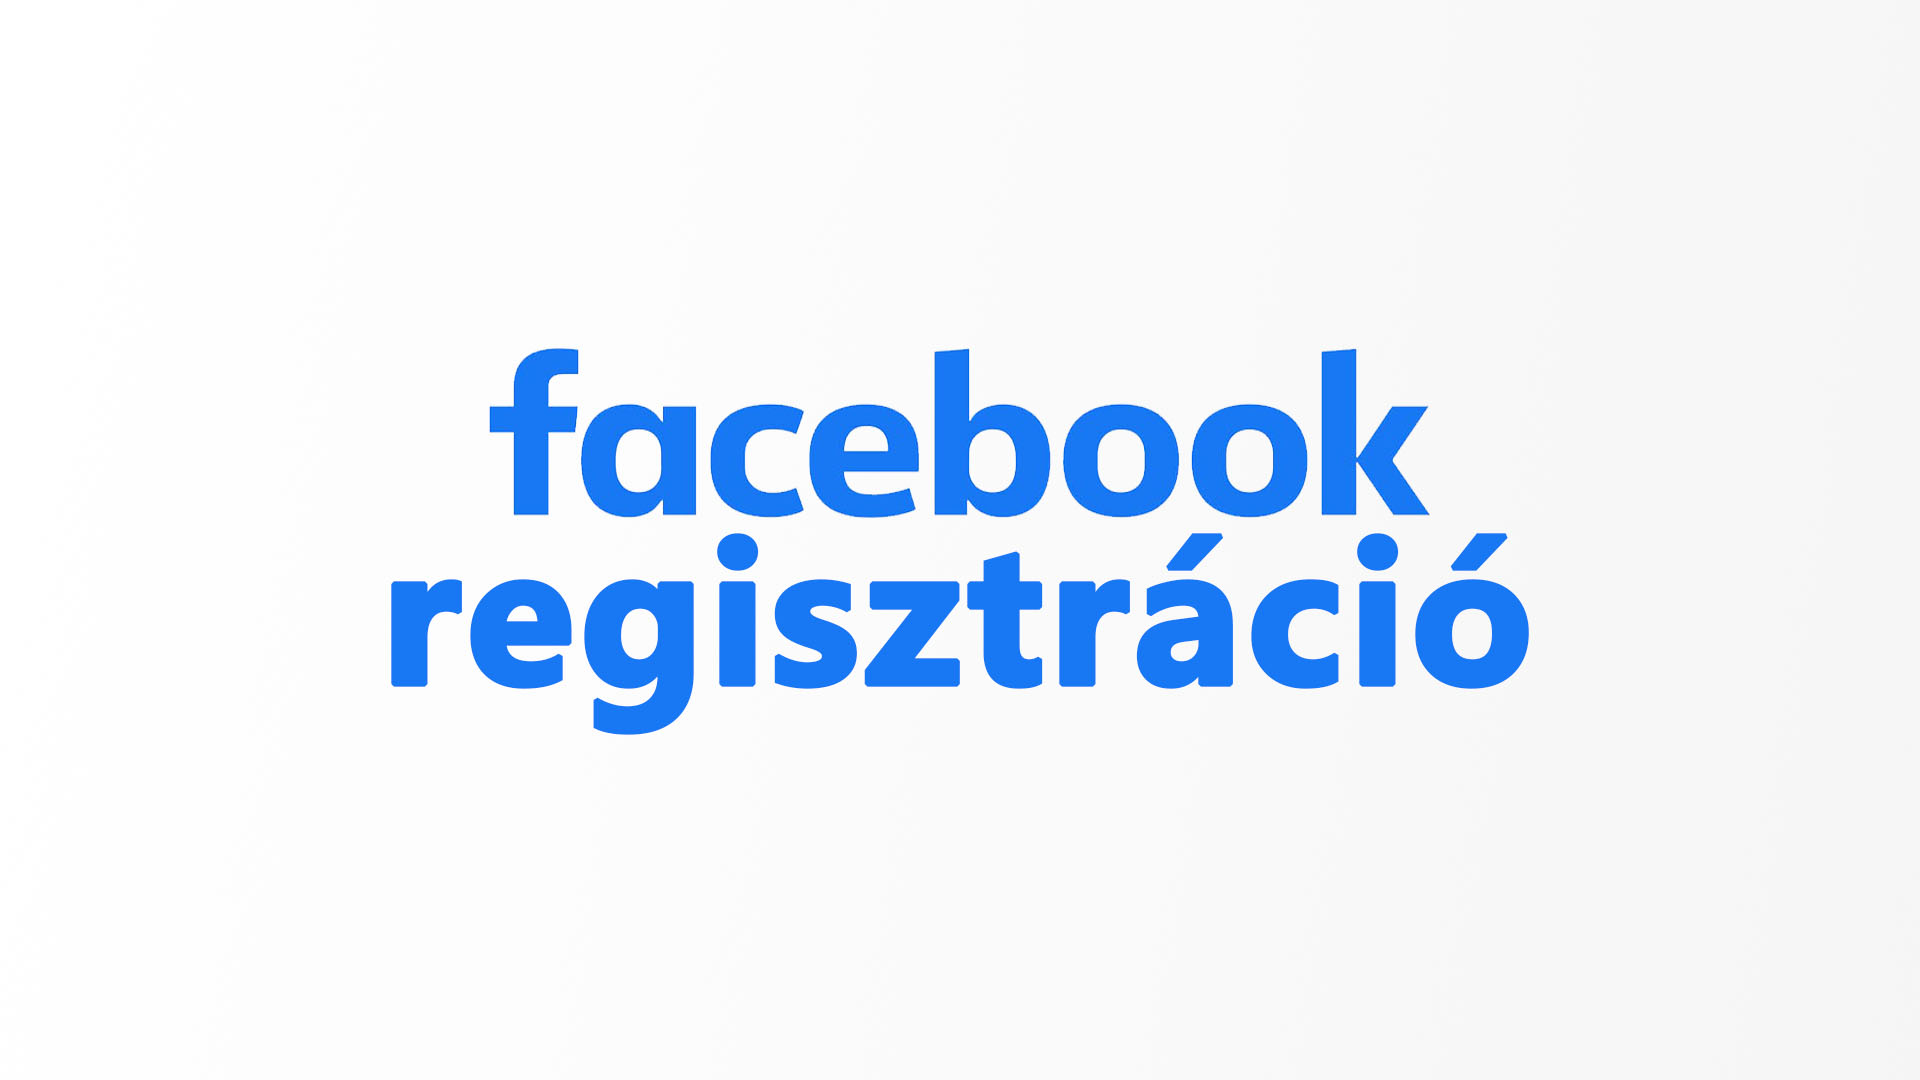 [Facebook regisztráció] – Facebook regisztrálás lépései magyarul – Facebook magyar nyelvű regisztrációs útmutató